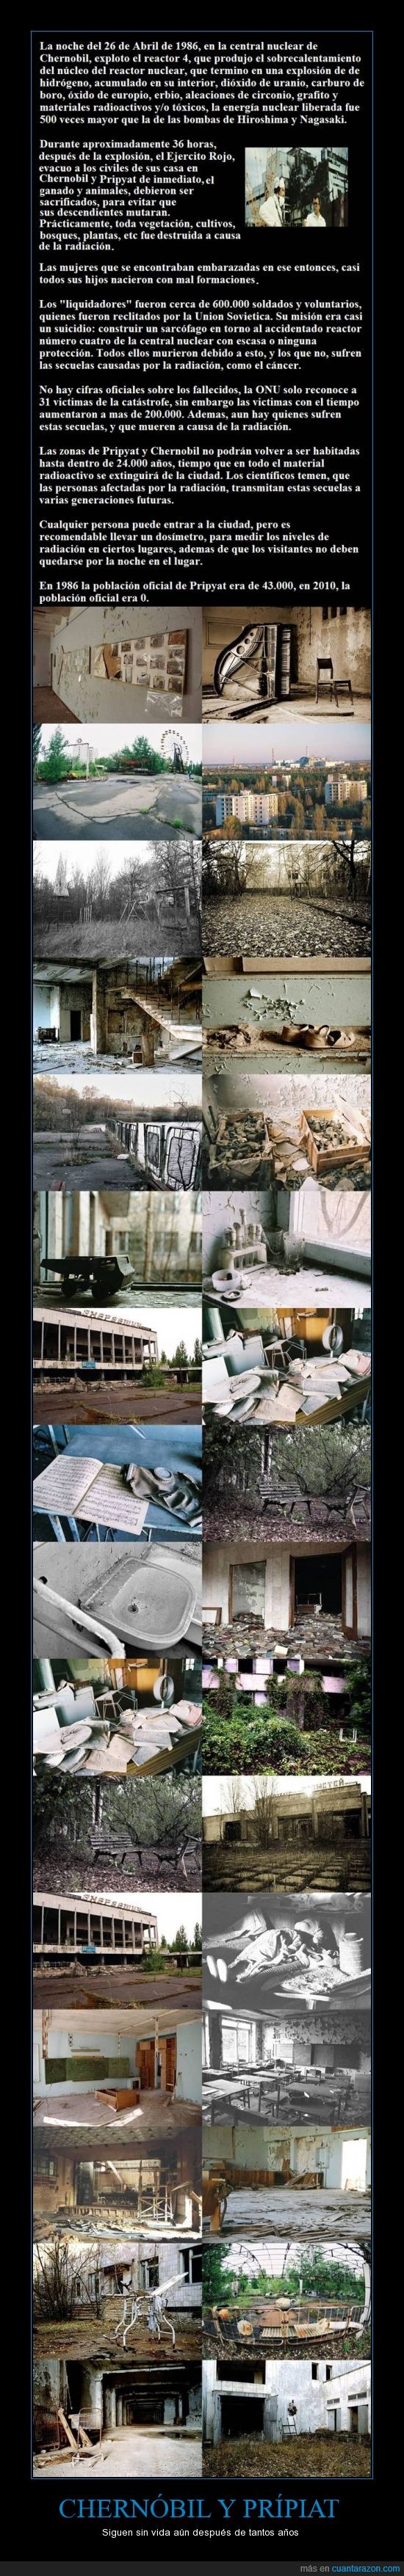 abandonado,atomico,chernobil,chernobyl,ciudad,muertes,mutación,nuclear,pripiat,pripyat,toxico